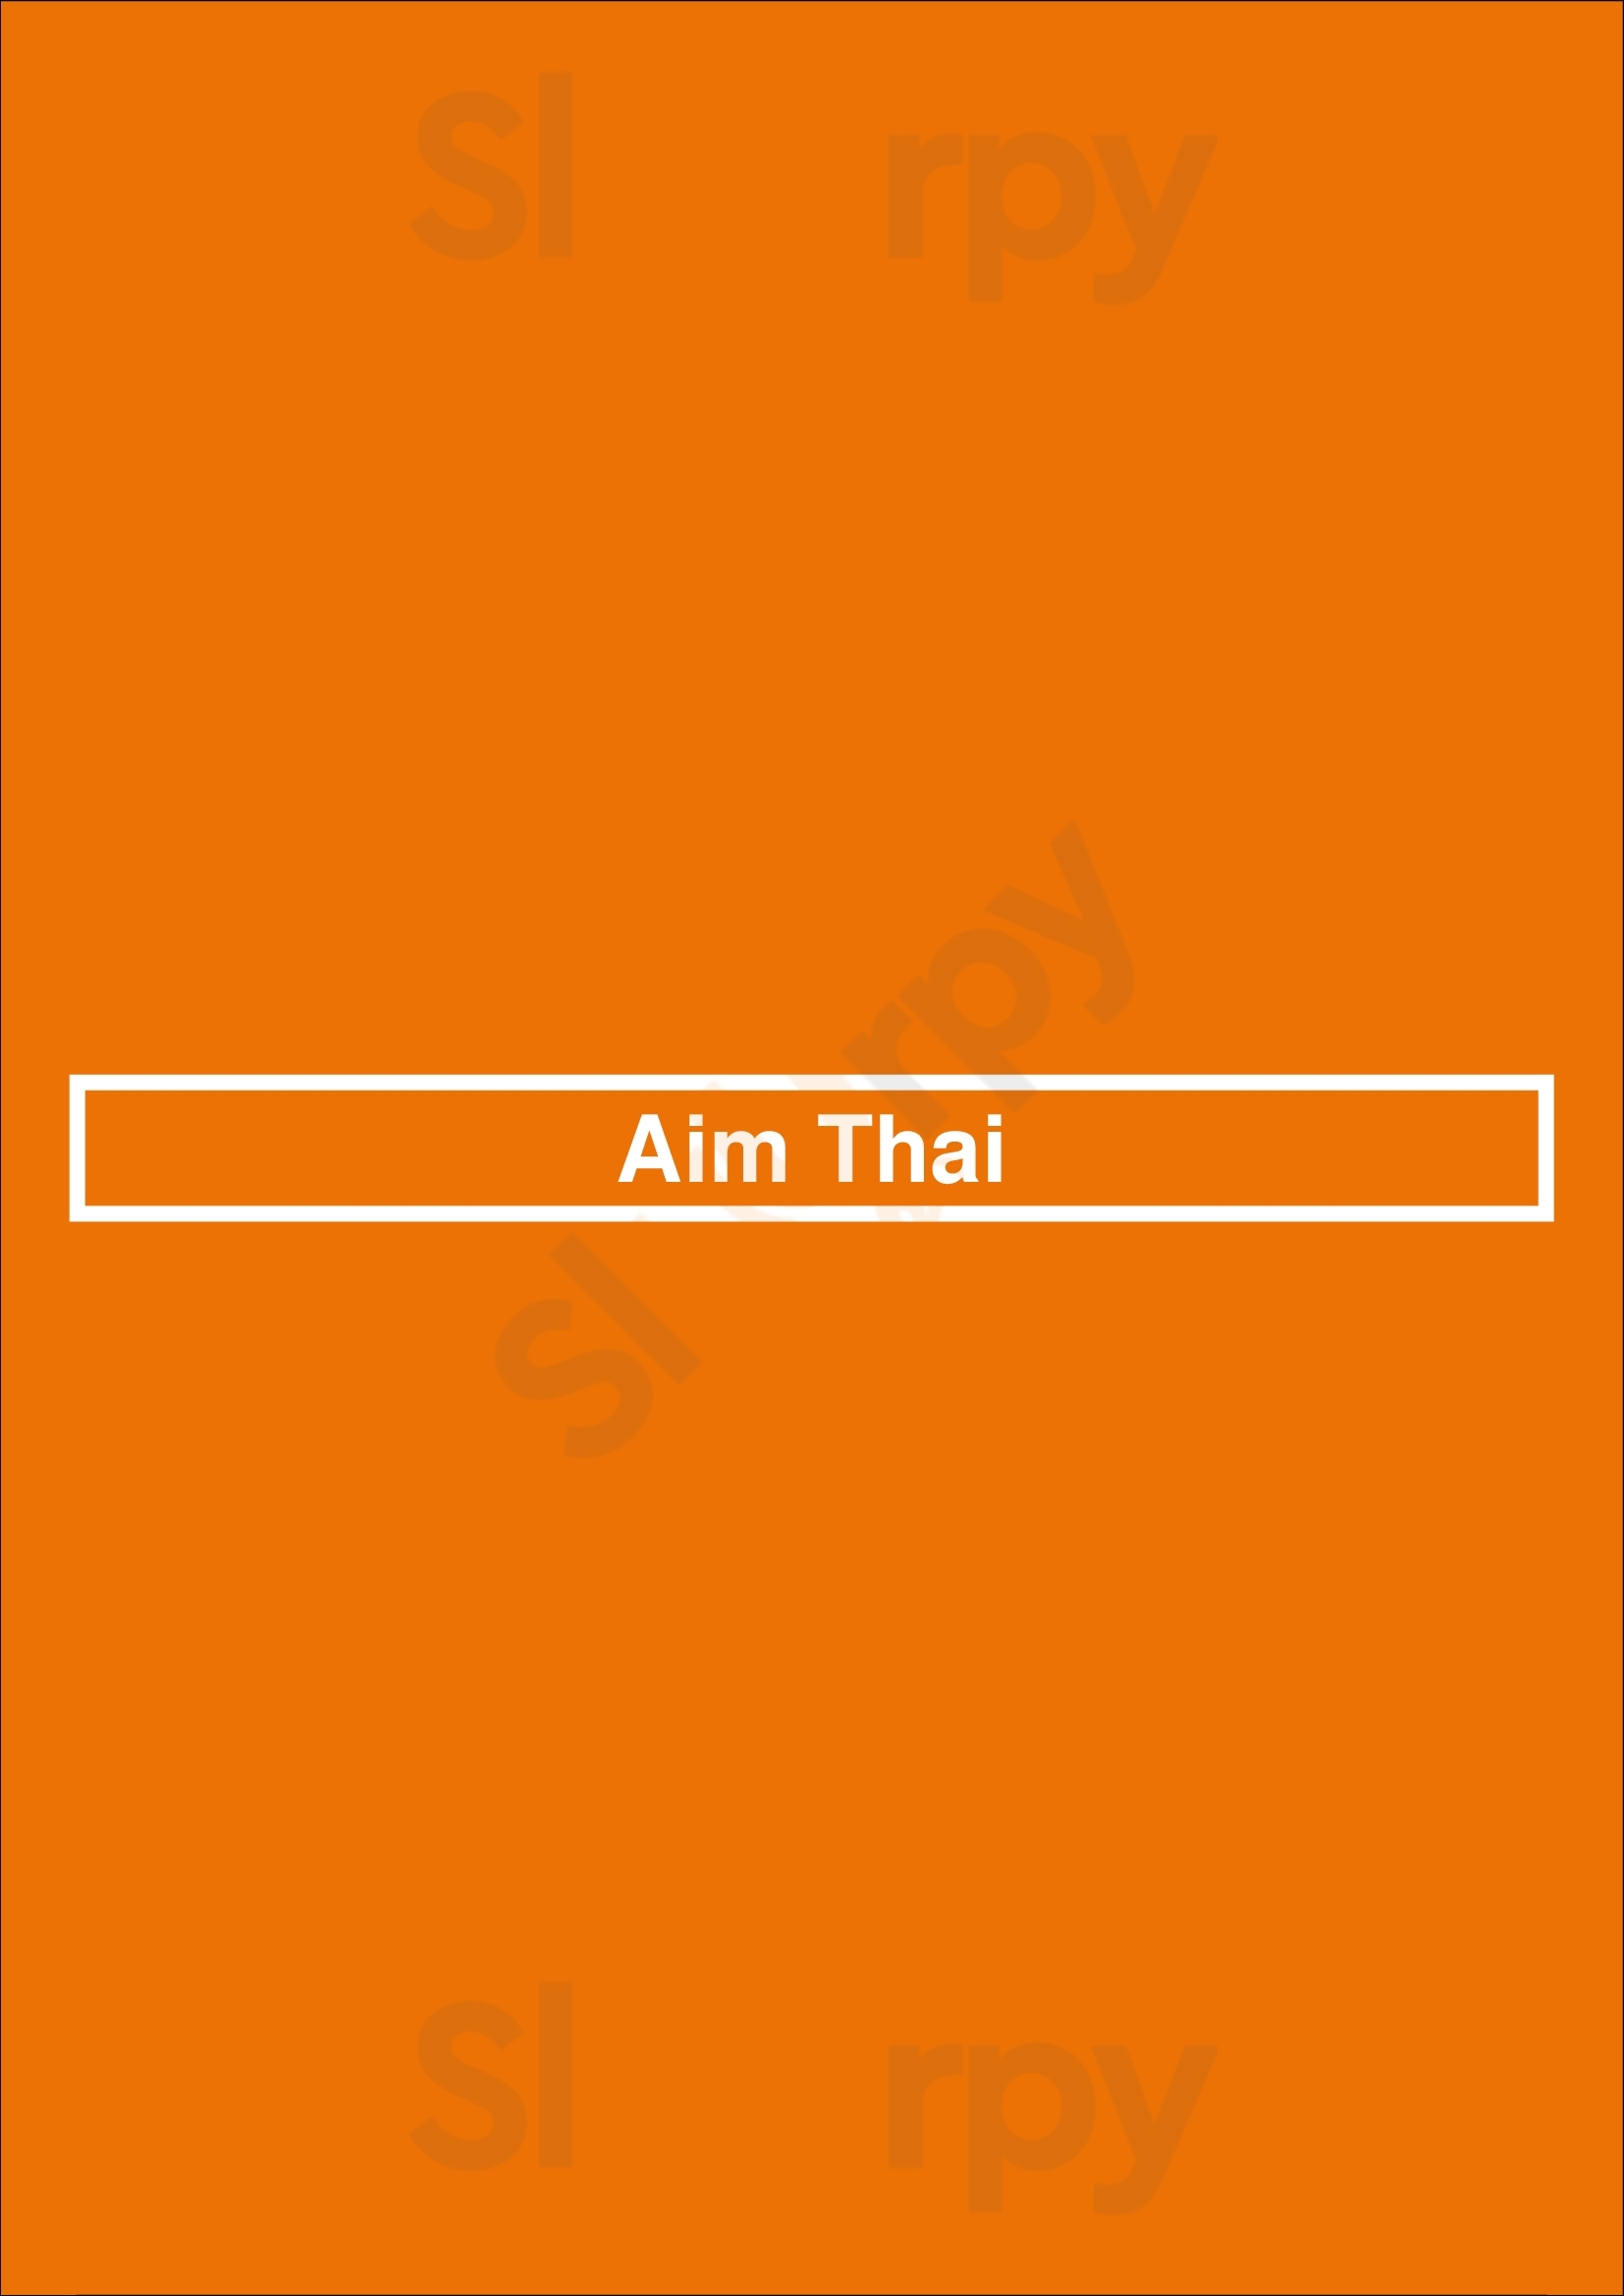 Aim Thai Houston Menu - 1